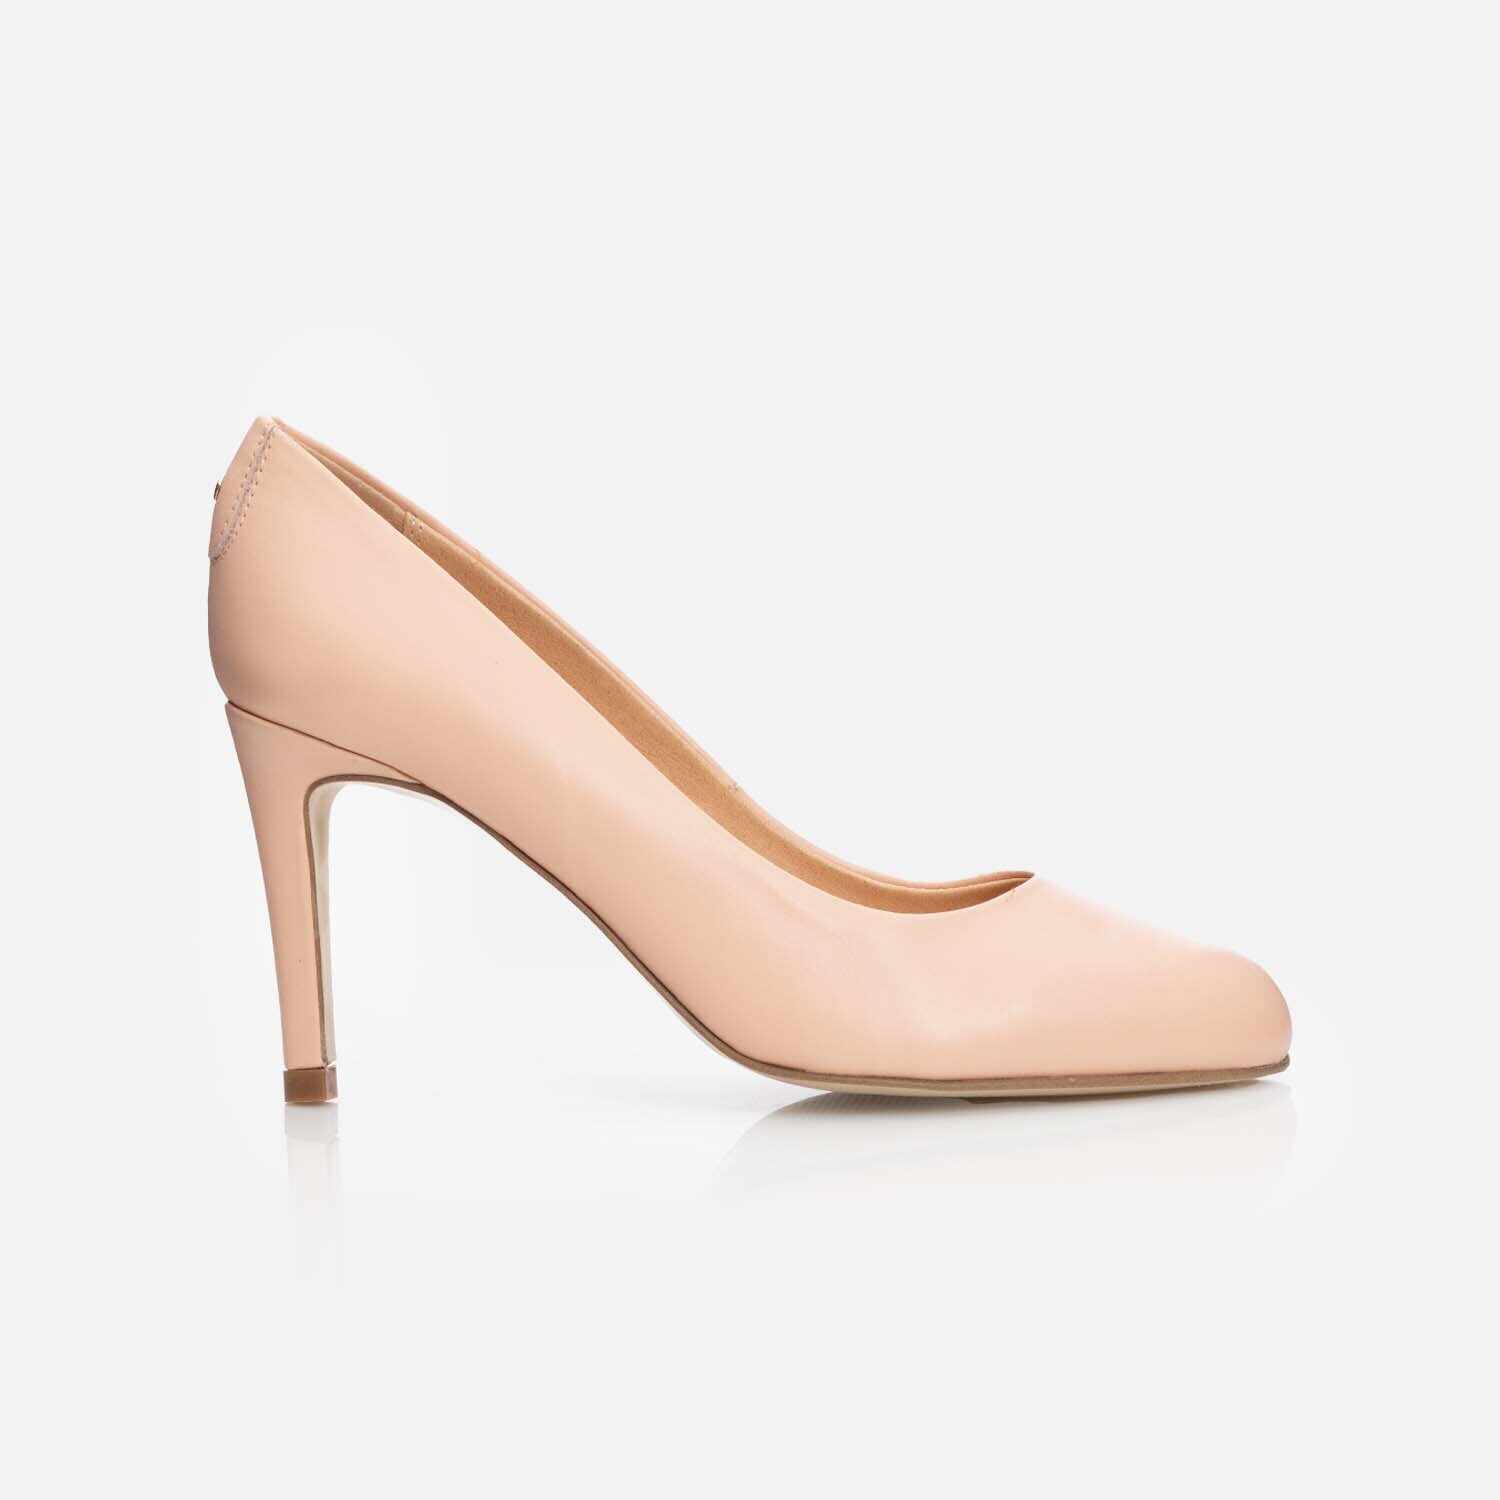 Pantofi eleganți damă din piele naturală - 026 Roz Pudră